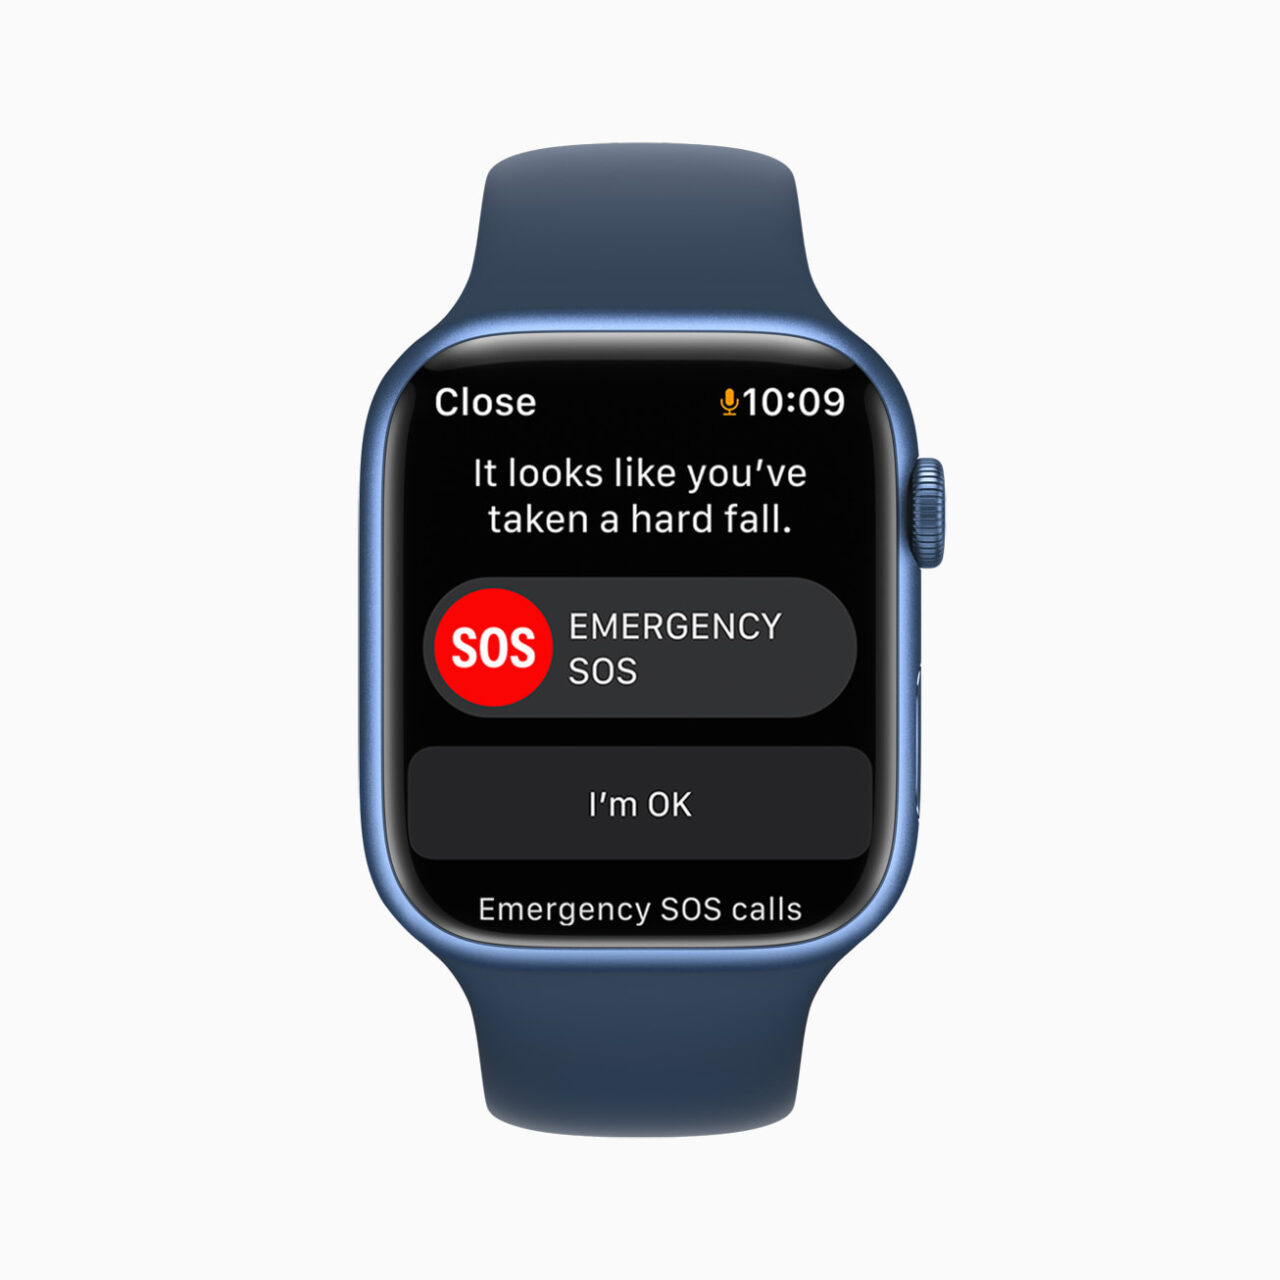 Inteligentny zegarek wyświetlający powiadomienie o upadku z opcją wezwania pomocy SOS i potwierdzenia, że użytkownikowi nic się nie stało.